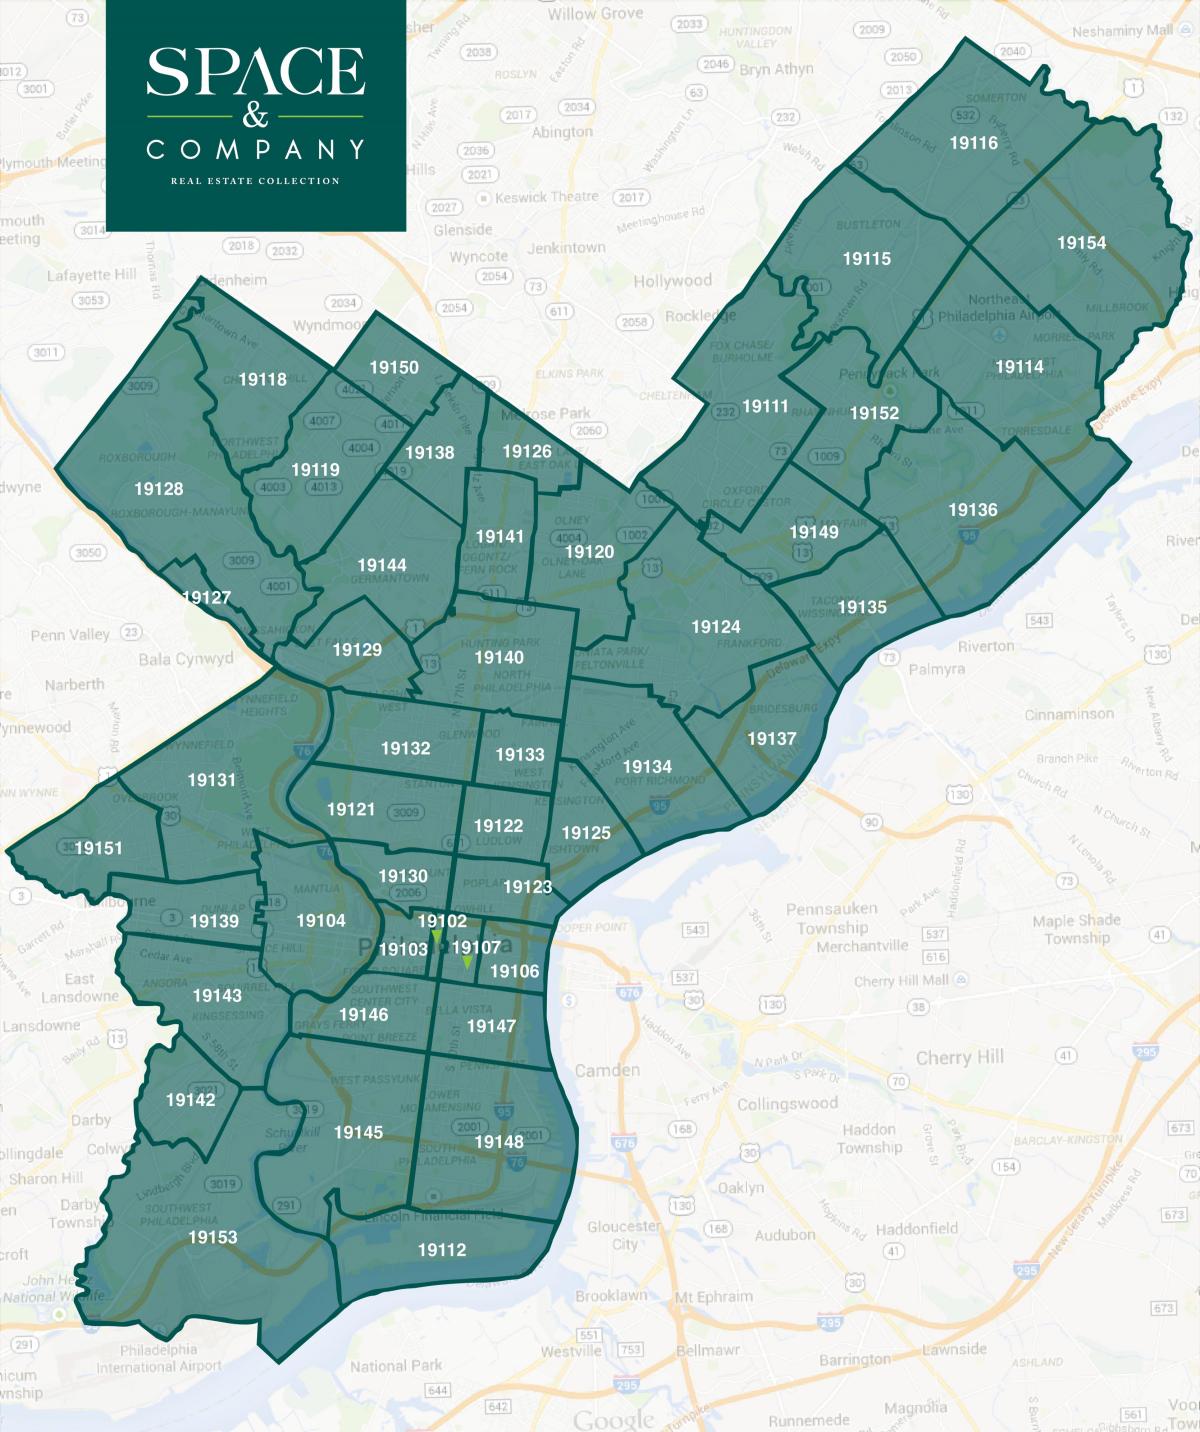 Поштовий індекс Філадельфії карті